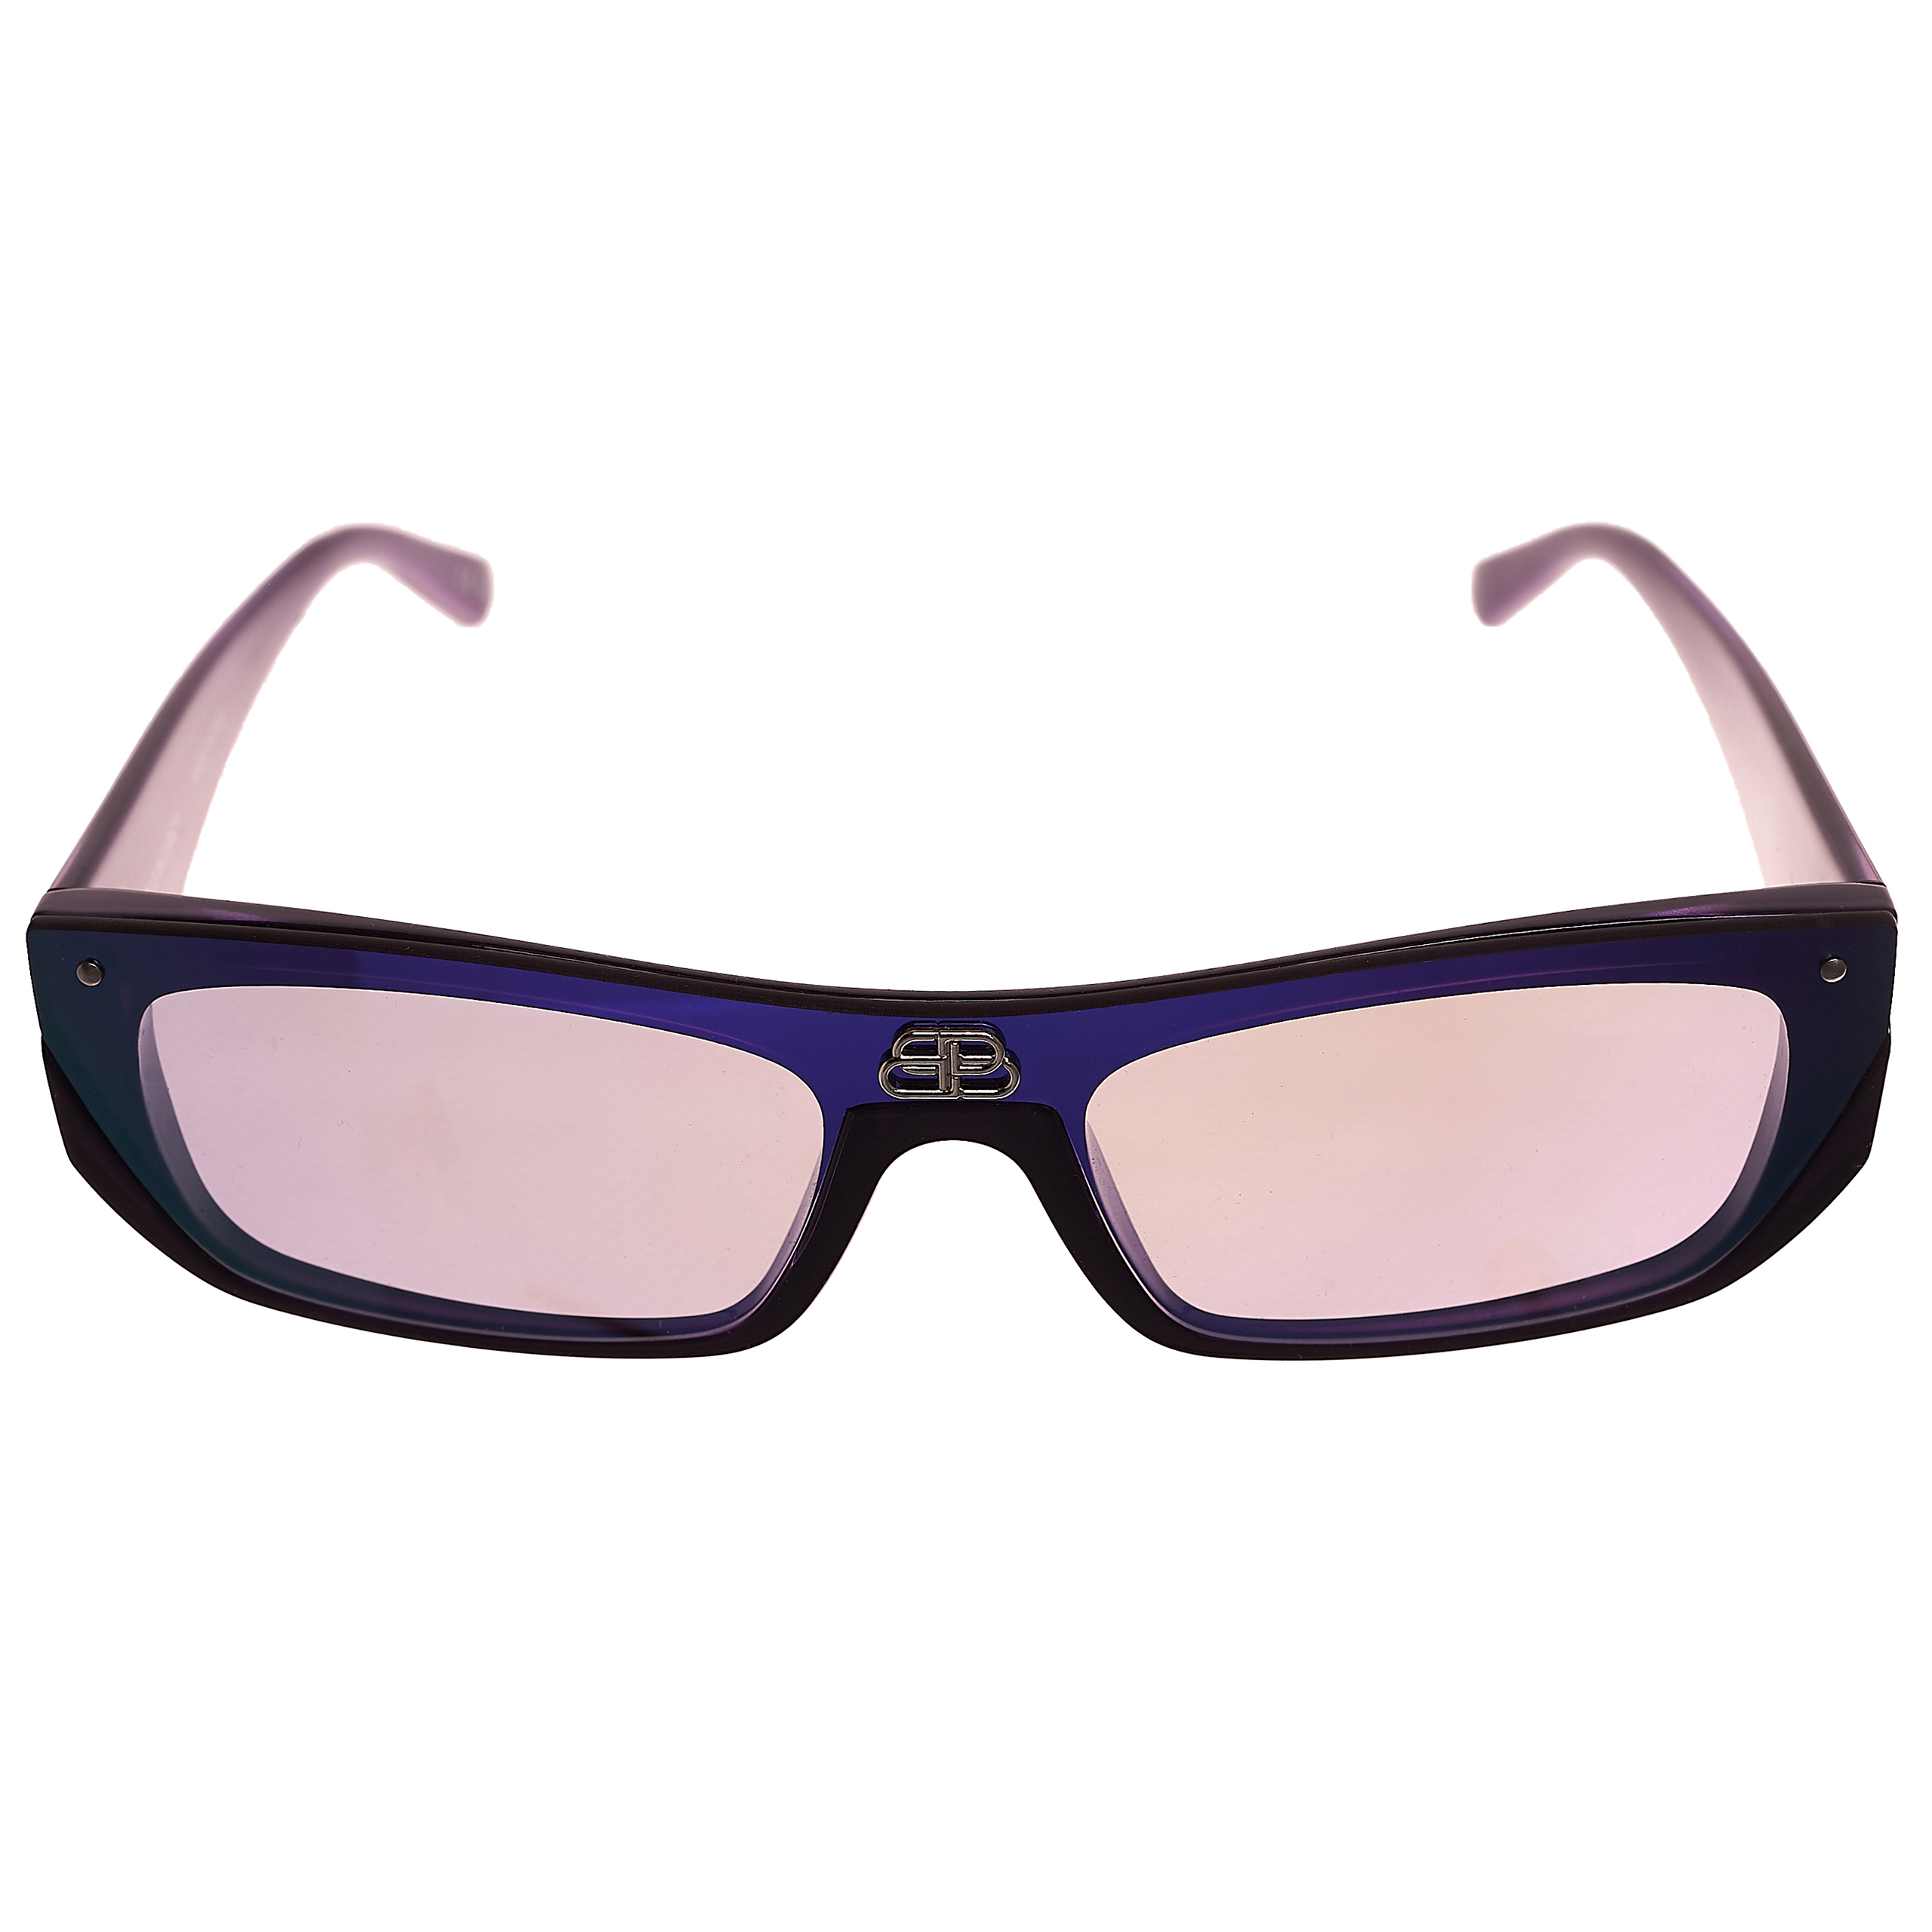 Фиолетовые очки с логотипом Balenciaga 609370/T0003/5067, размер One Size